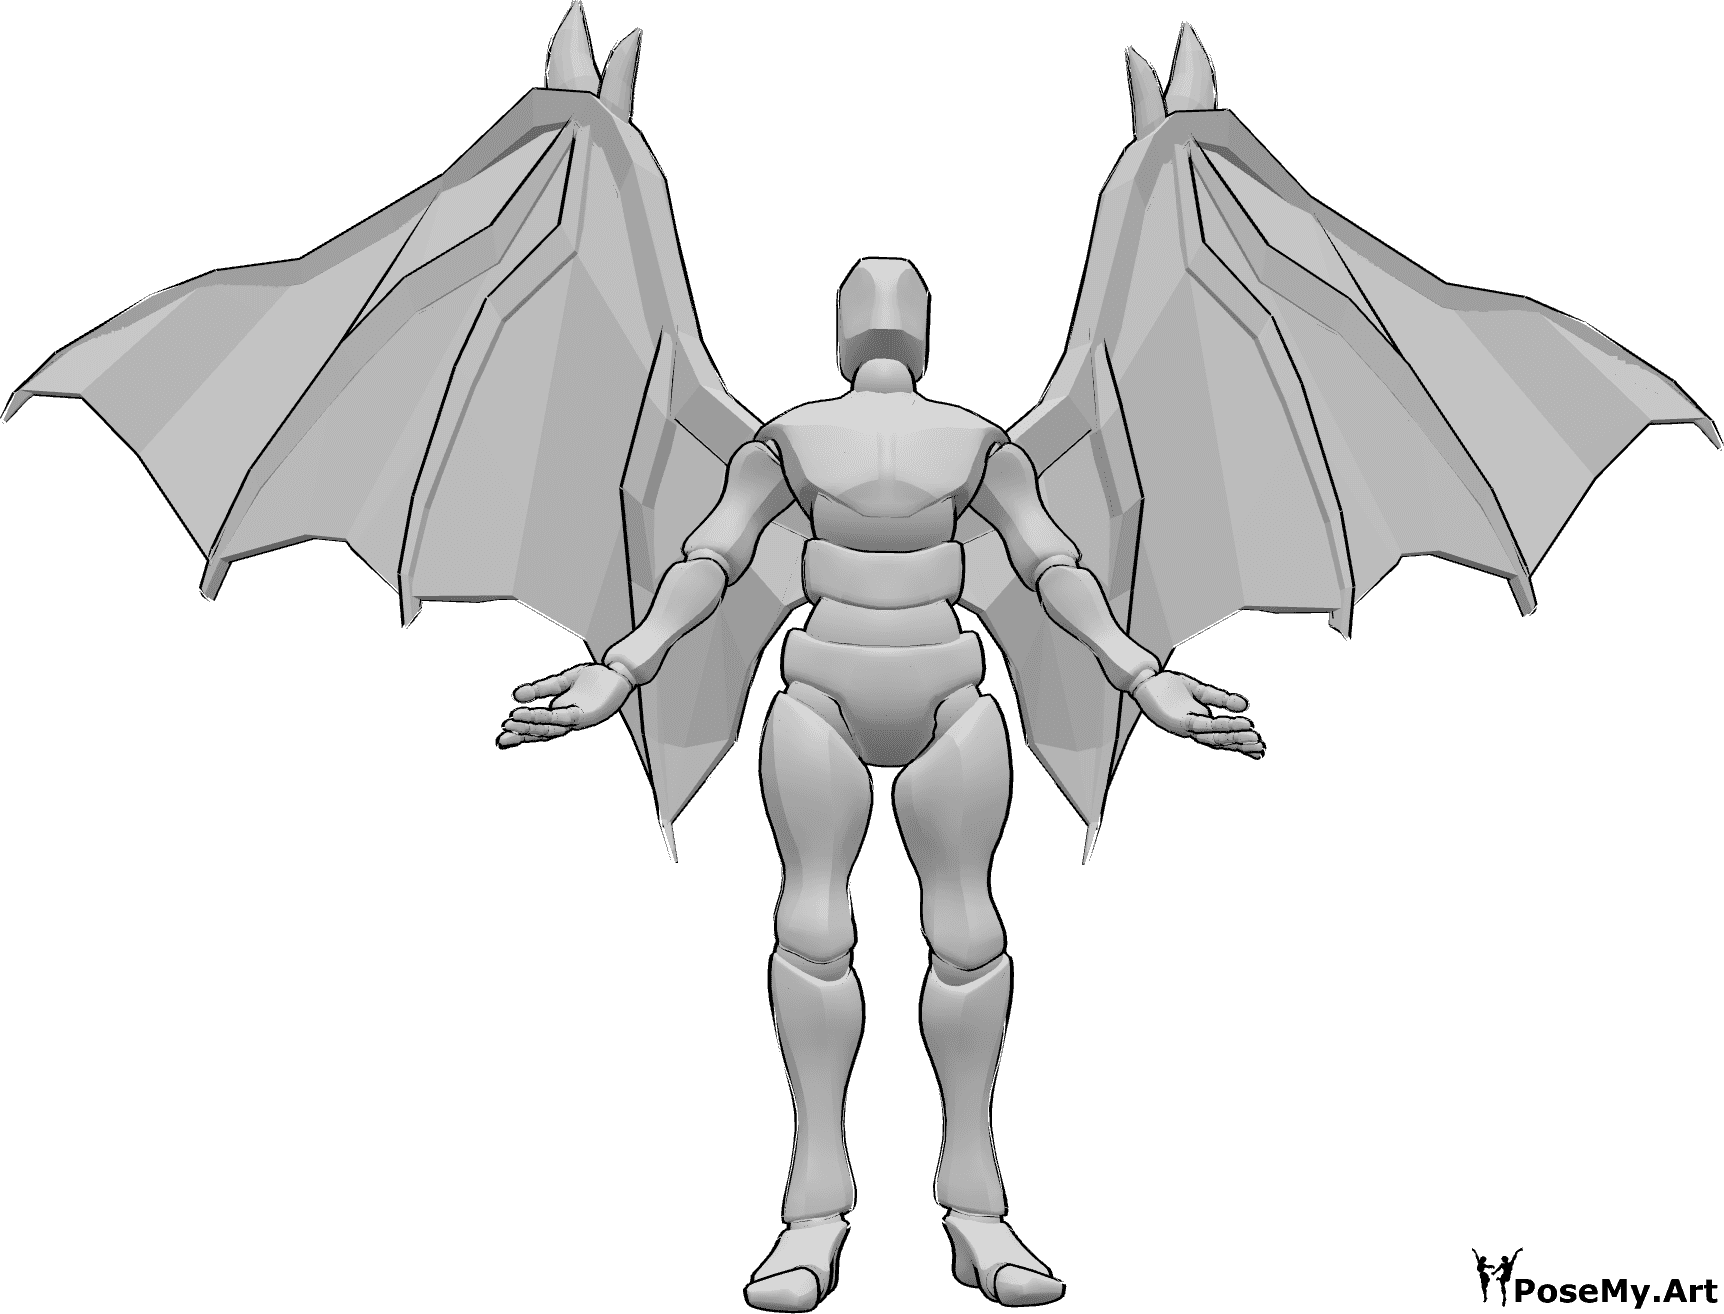 Referencia de poses- Postura de pie con alas de diablo - Varón con alas de diablo está de pie, mirando hacia arriba y levantando las manos